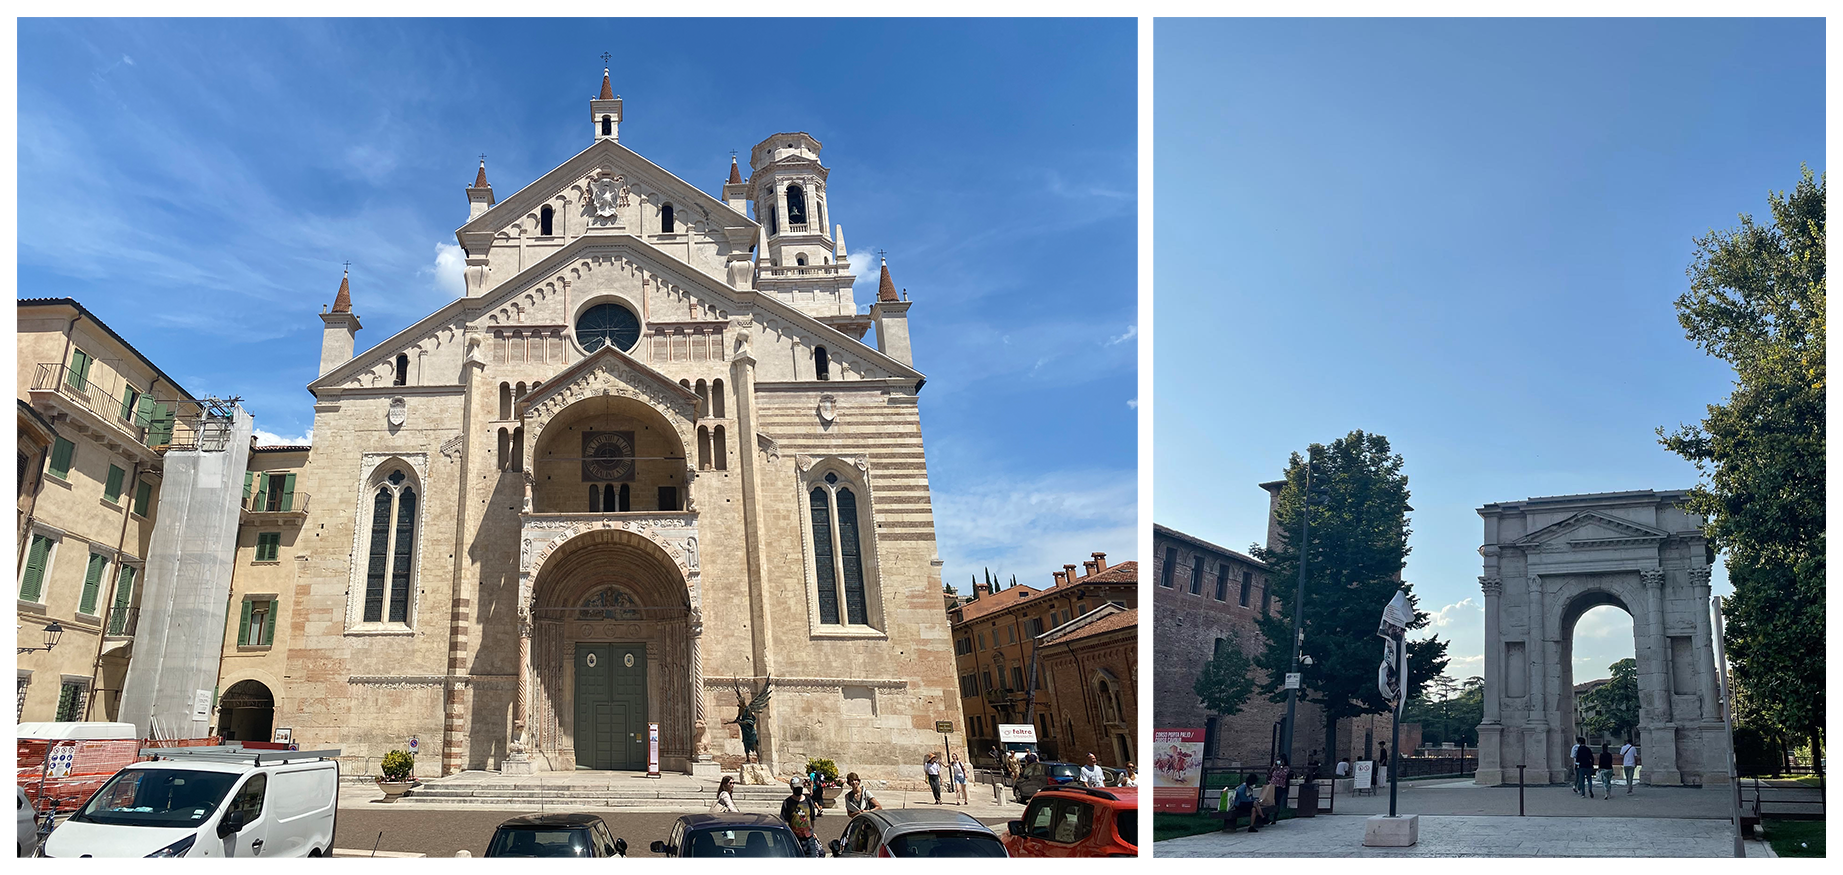 Basilica-San-Zeno-Maggiore-Arco-dei-Gavi.png